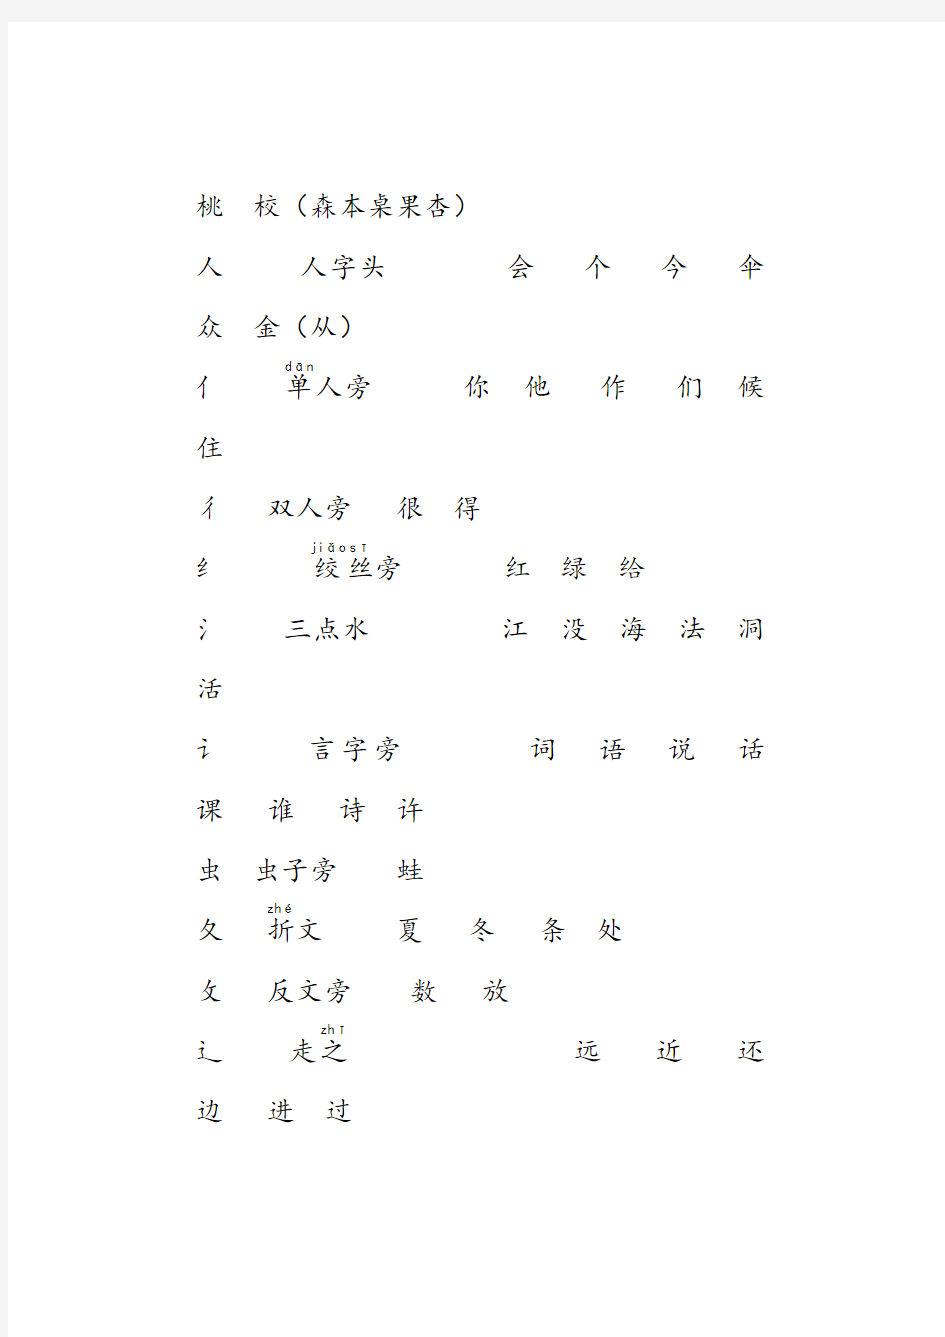 实用文档之一年级上册汉字常用偏旁名称表